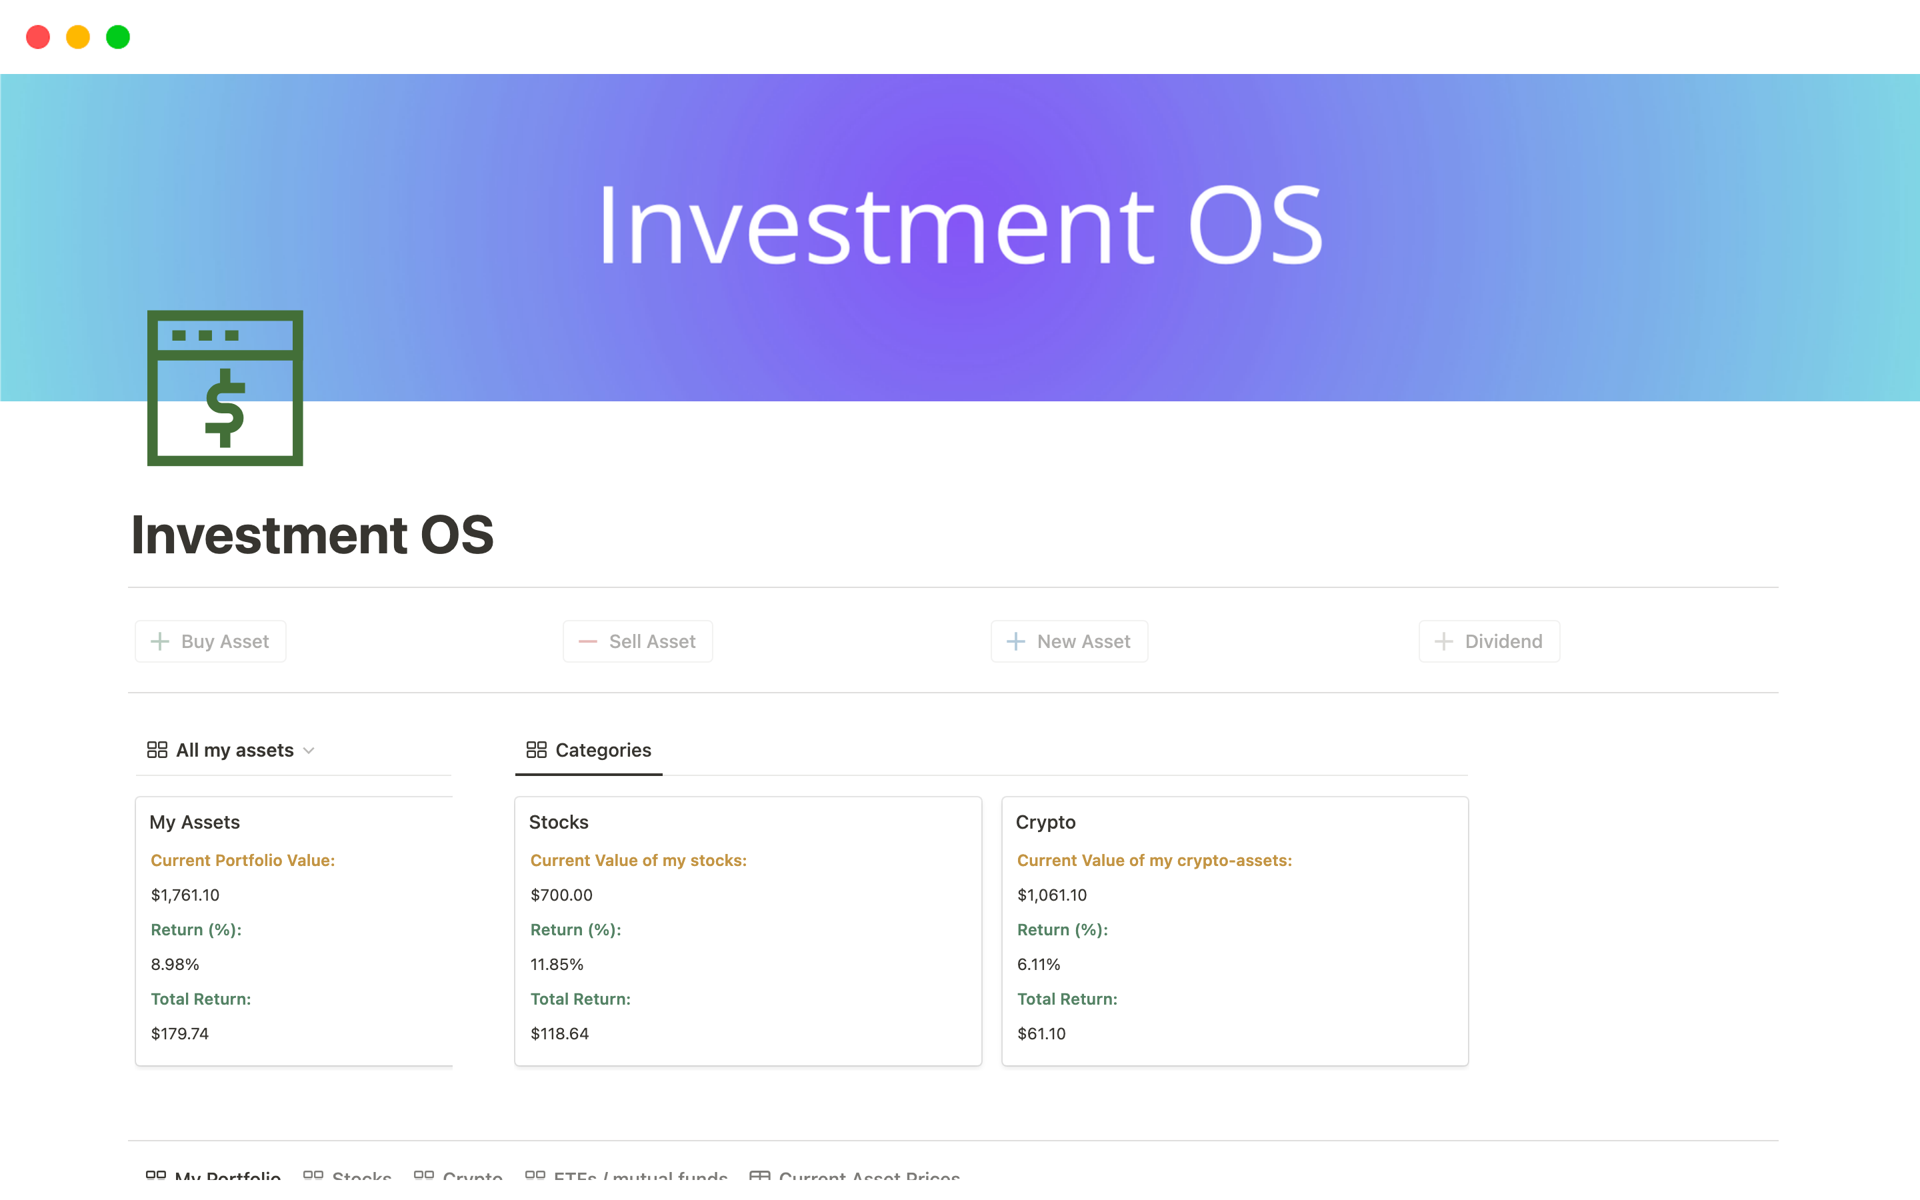 Vista previa de una plantilla para Investment OS